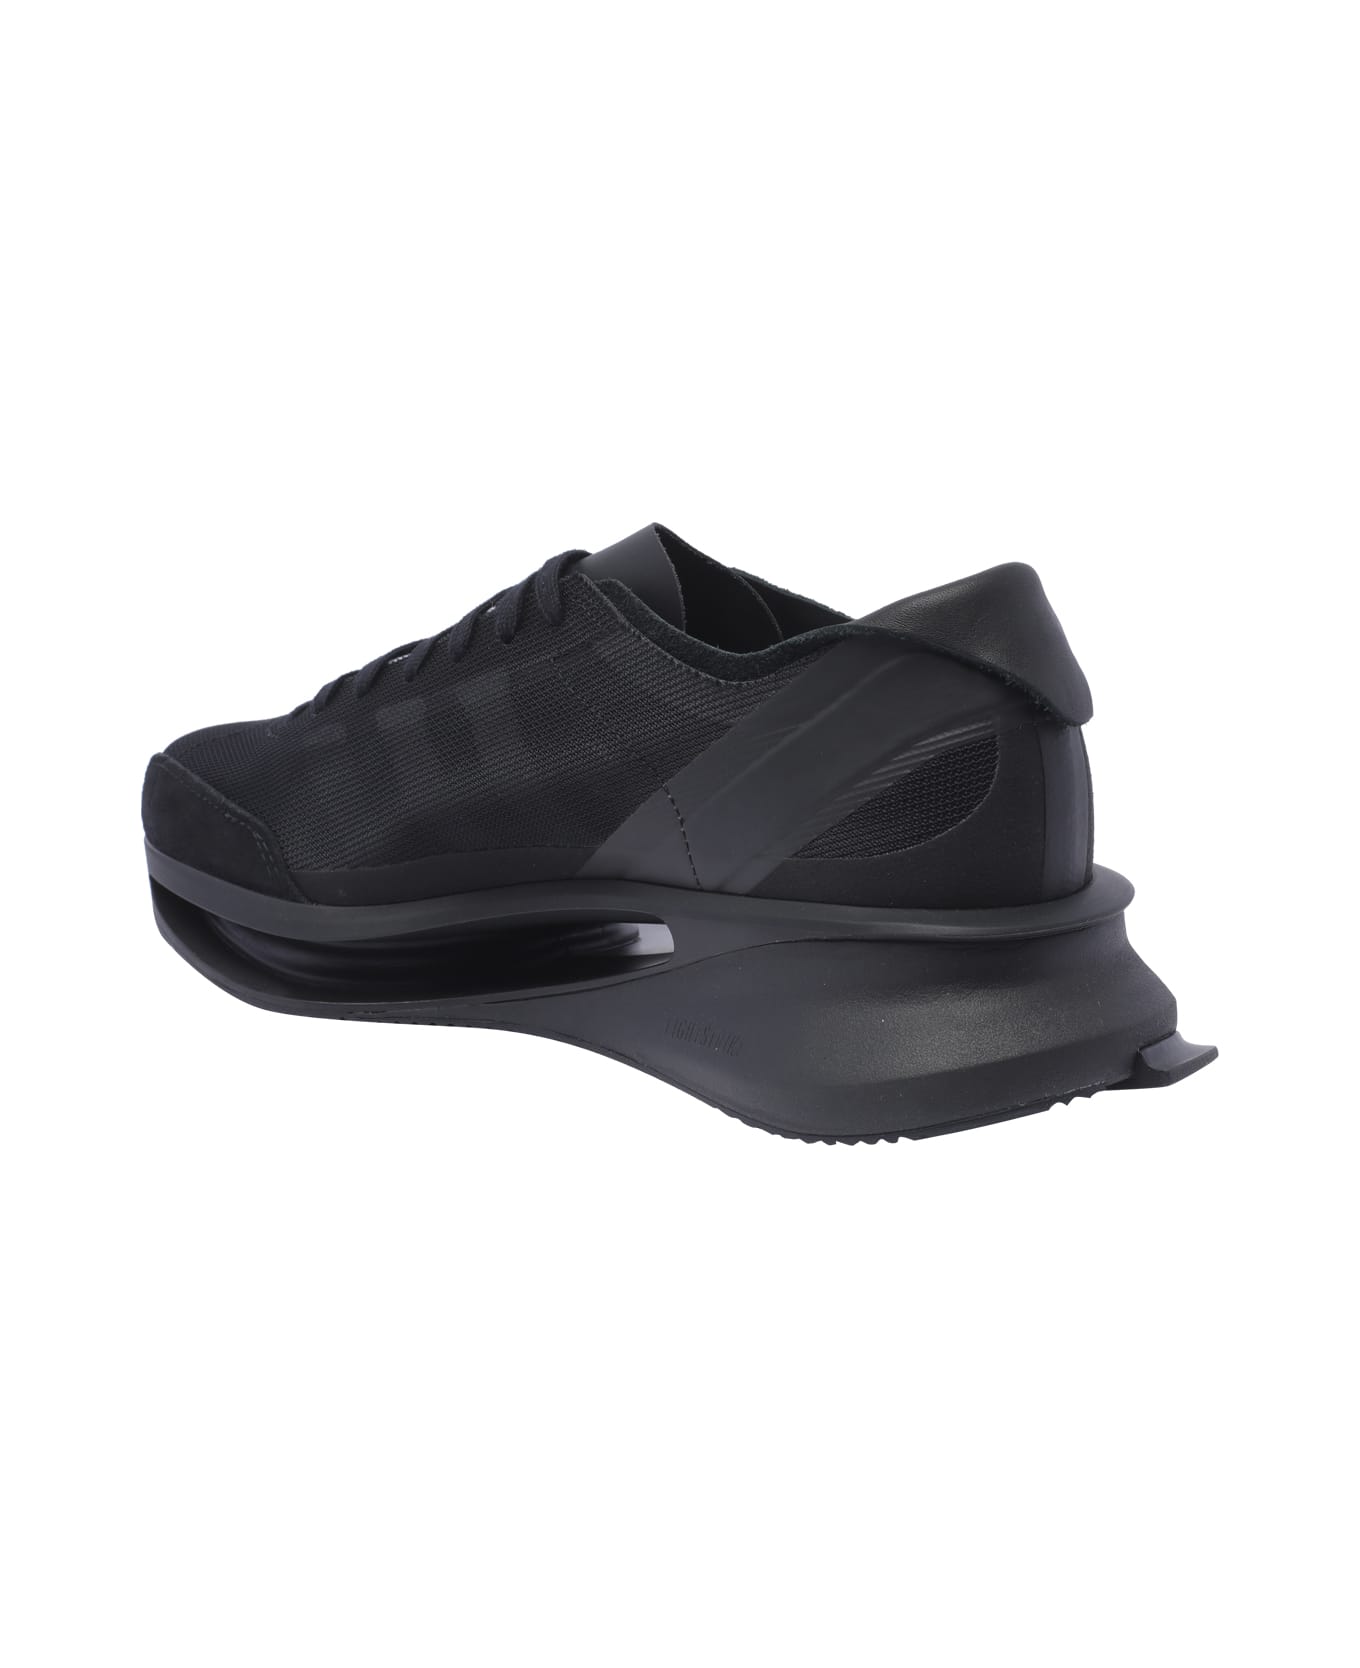 Y-3 S-gendo Sneakers - Black